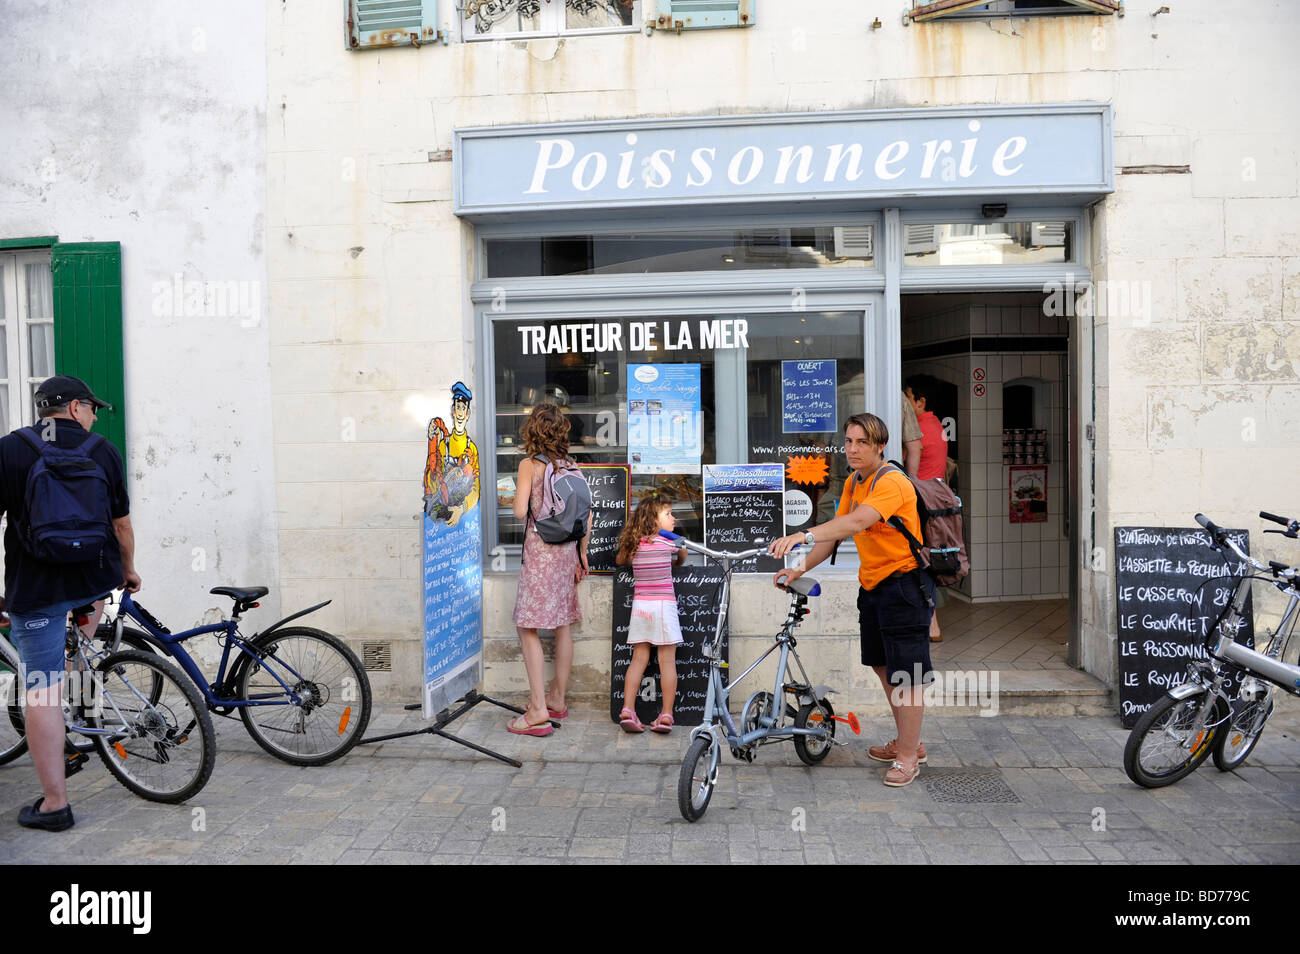 Ein Poissonerie Shop in Ars auf Re Frischfisch an Urlauber zu verkaufen Stockfoto